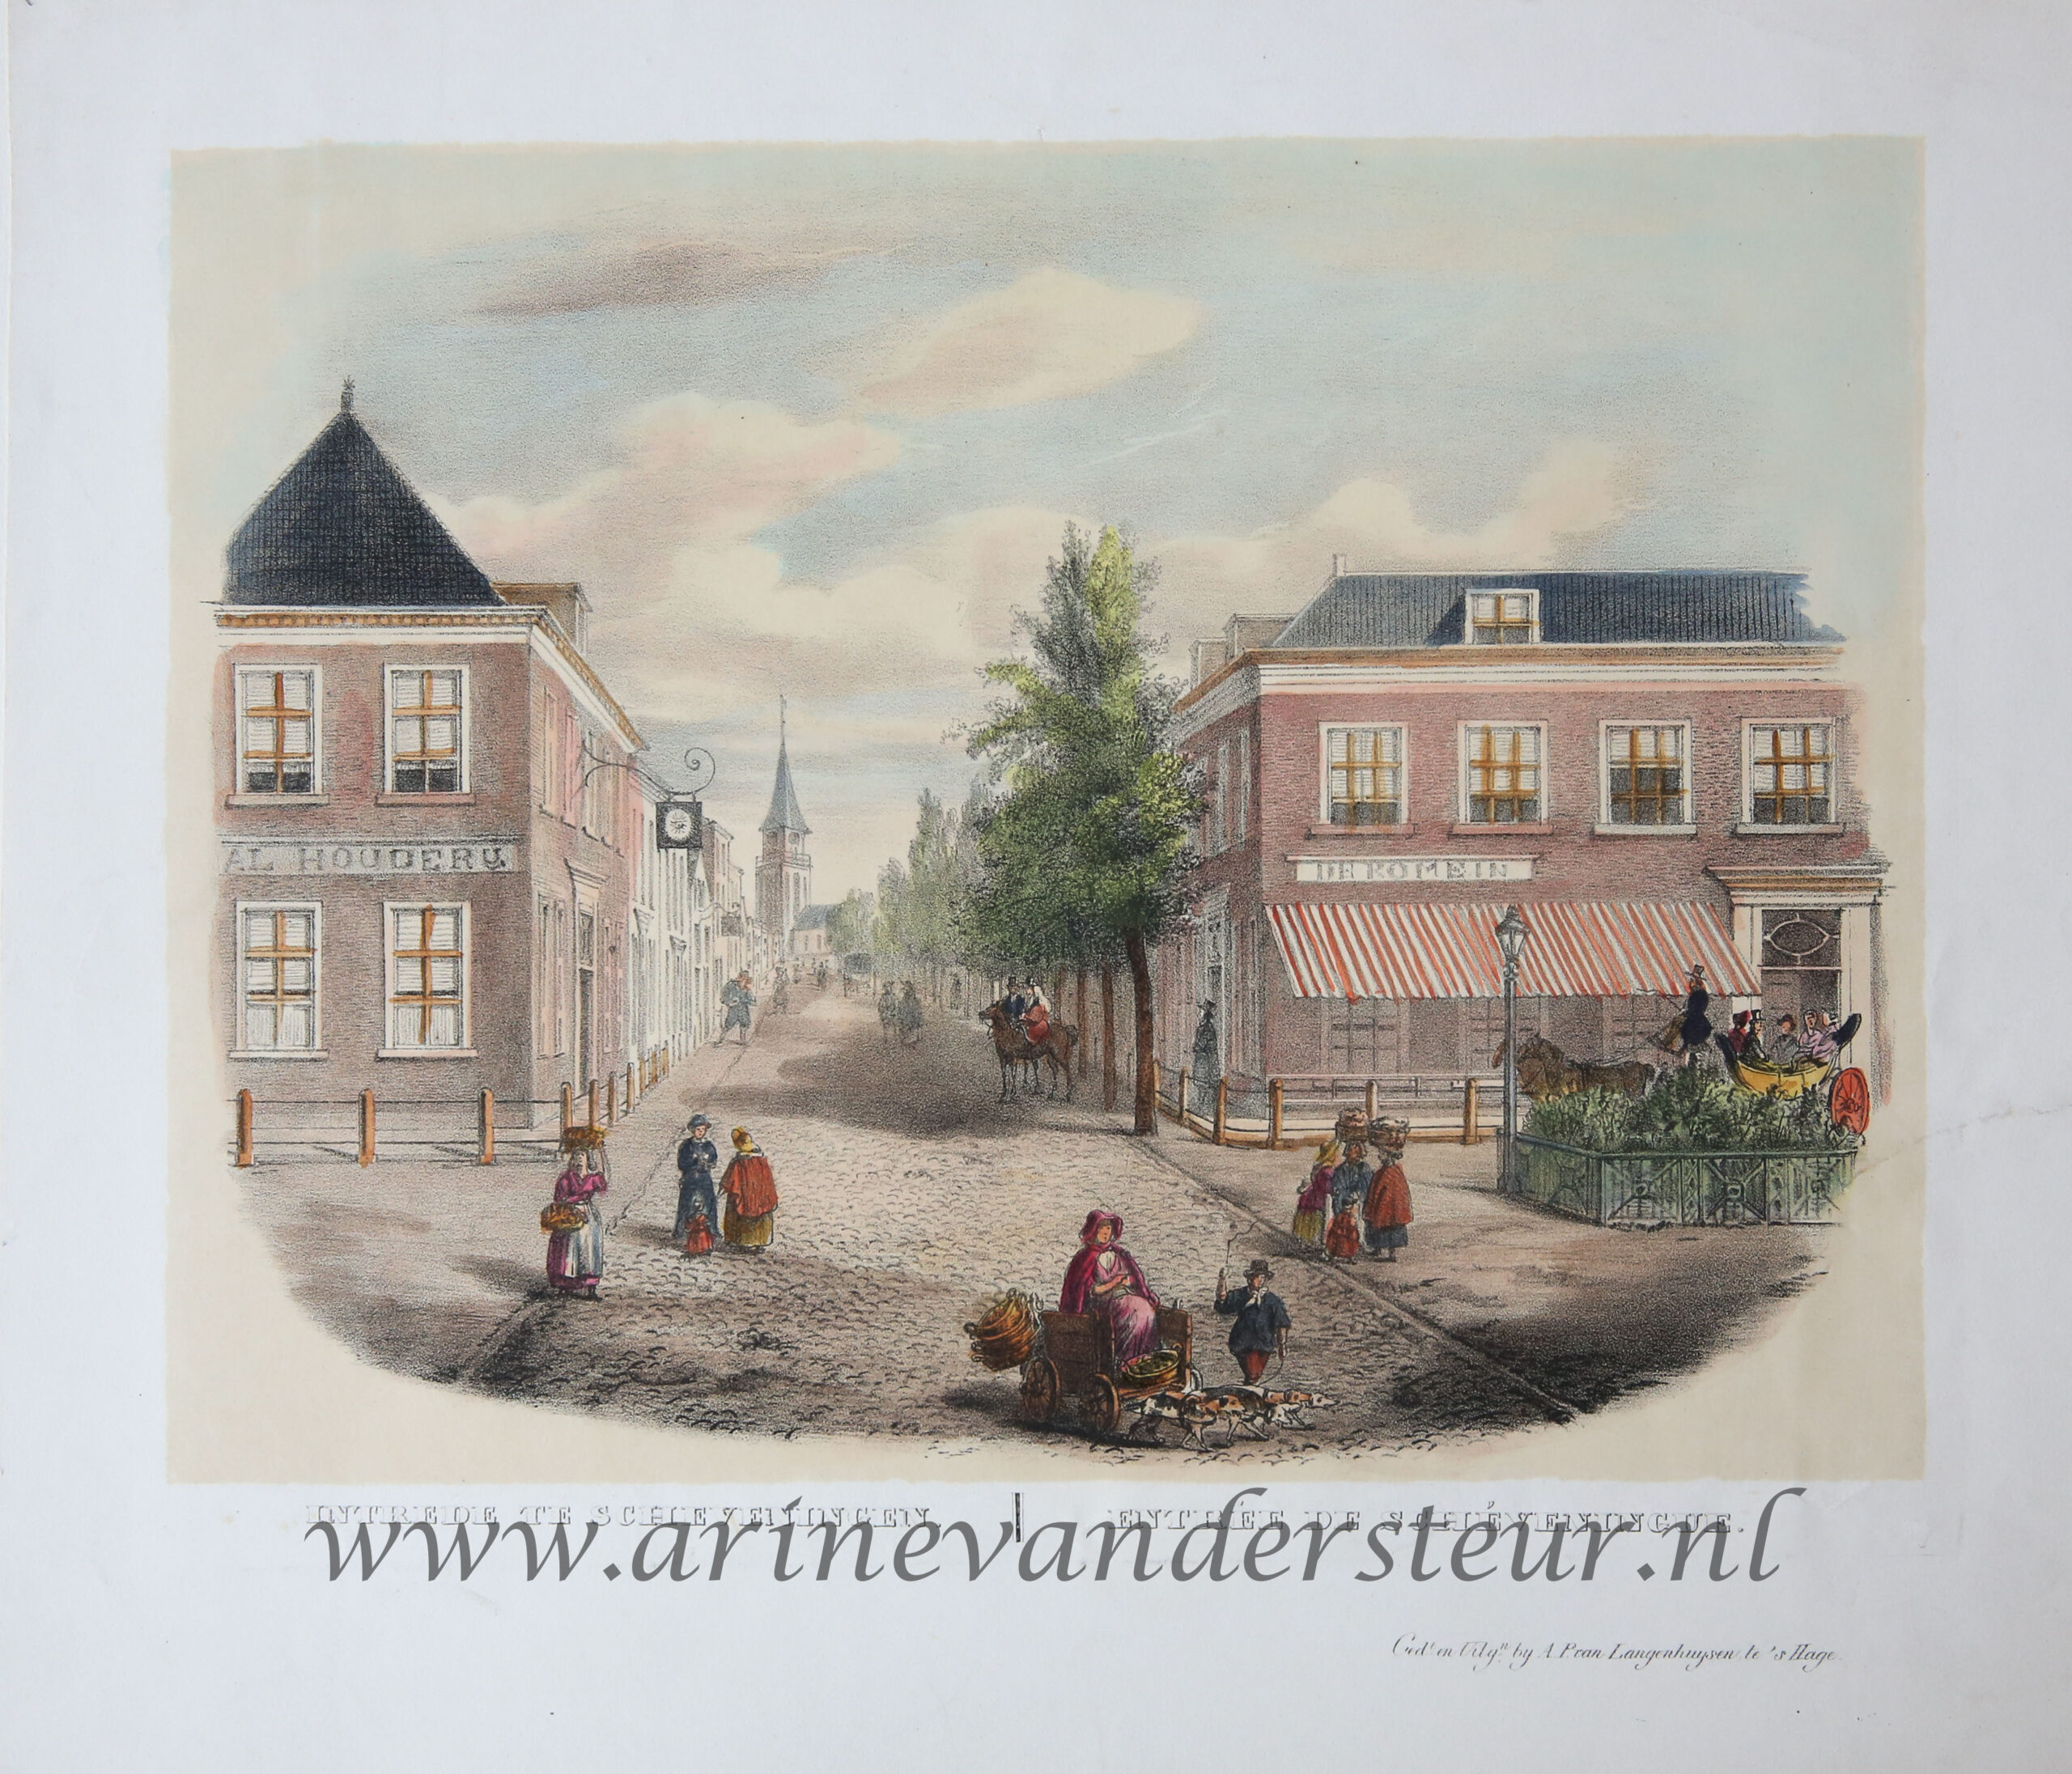  - [Antique print, colored lithograph, Scheveningen] Intrede te Scheveningen / Entre de Schveningue, published before 1844.